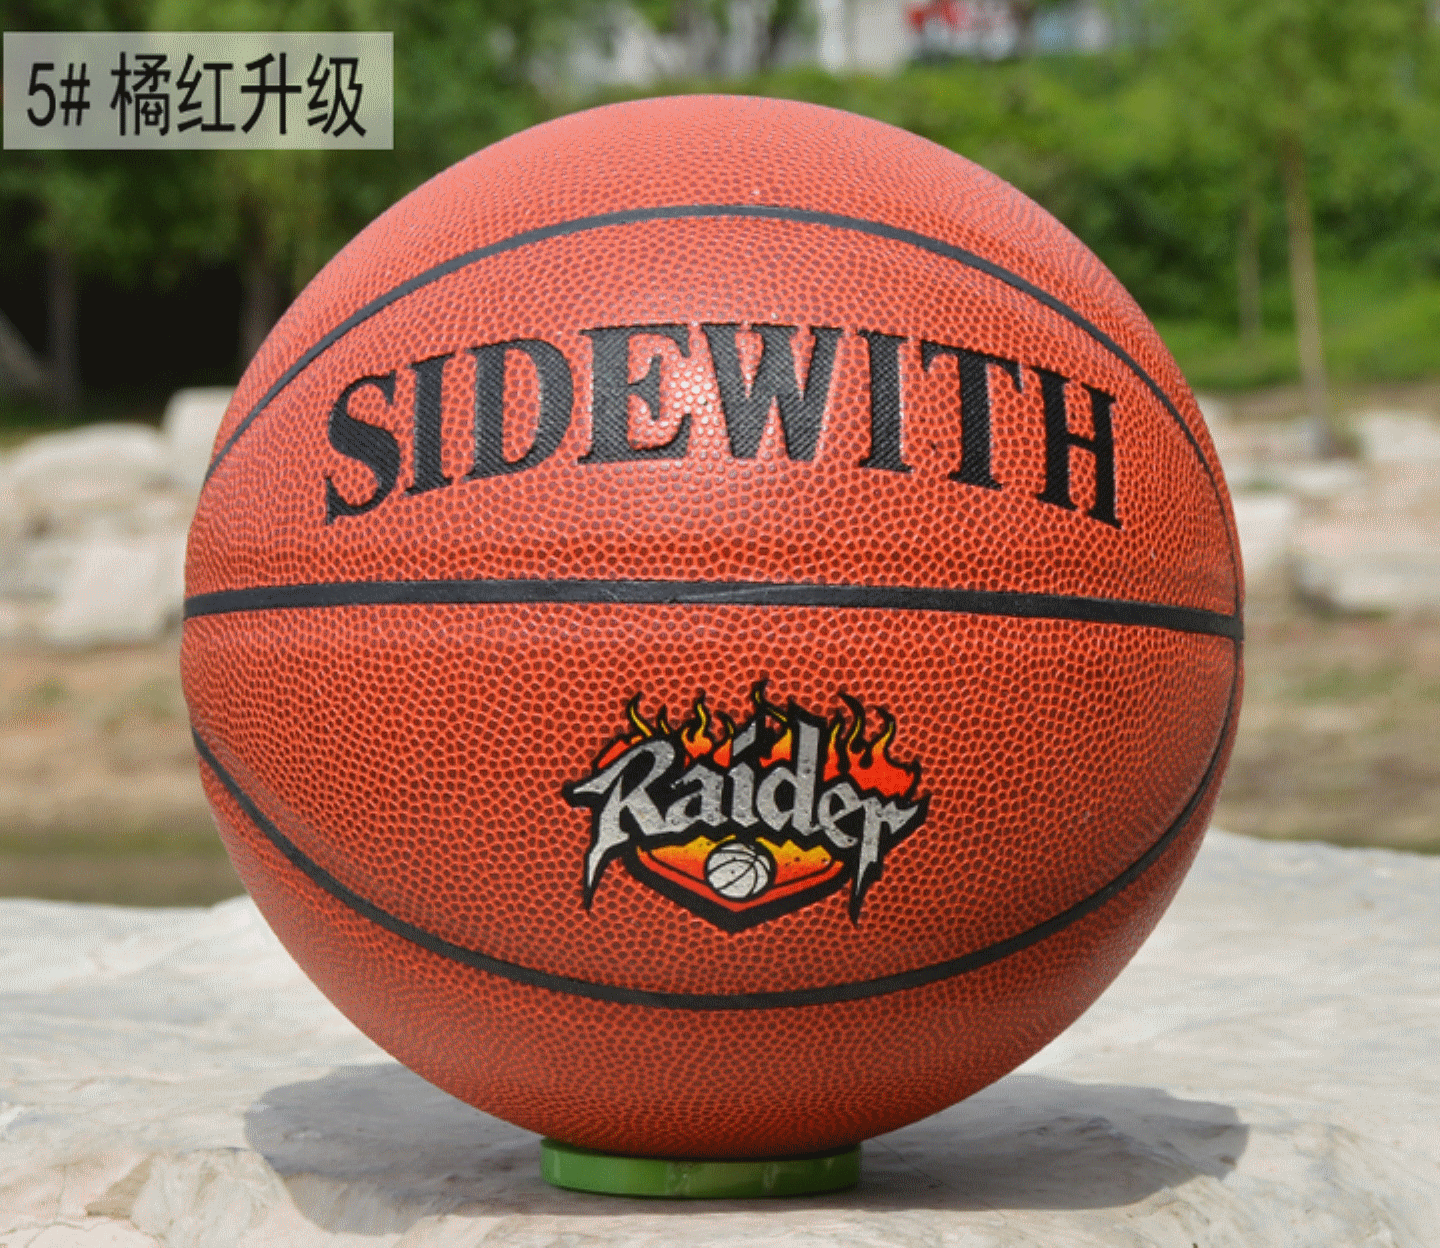 Ballon de basket 1992884